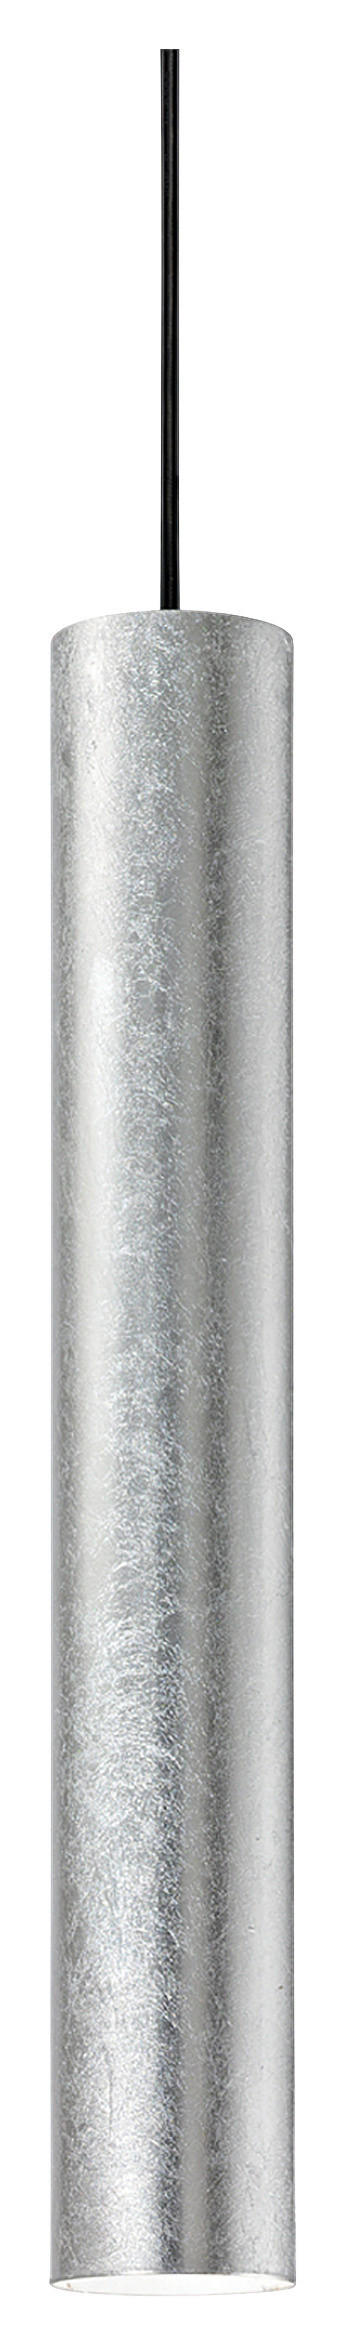 HÄNGELEUCHTE 6/56/140 cm   - Silberfarben, KONVENTIONELL, Metall (6/56/140cm)